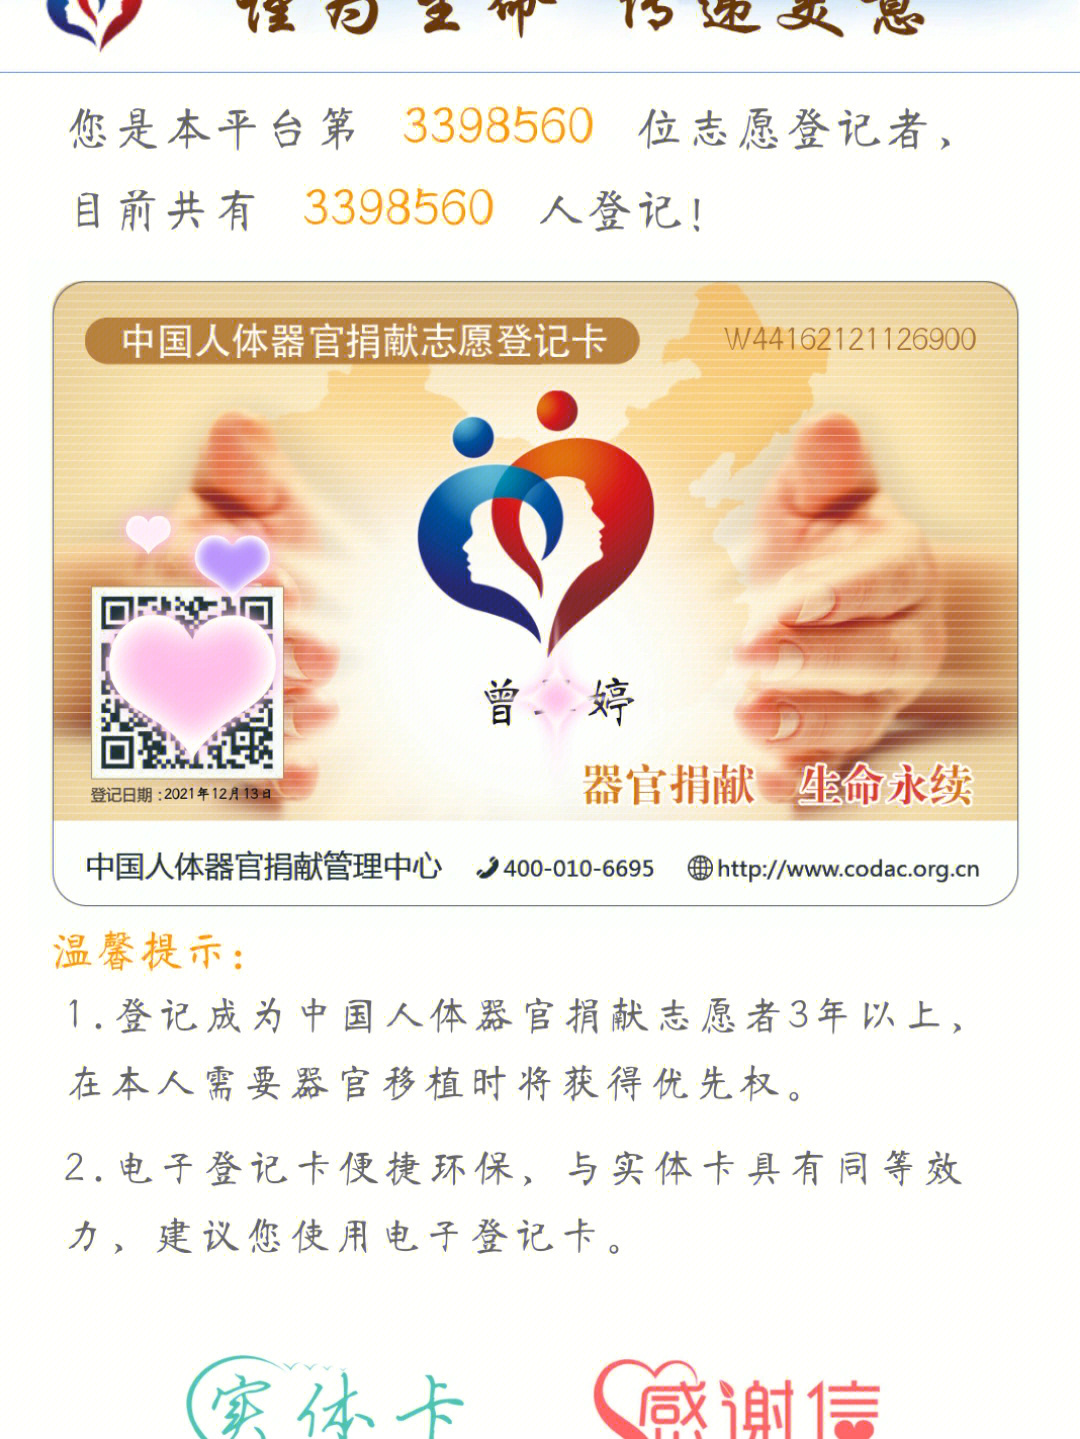 中国人体器官捐赠志愿者  